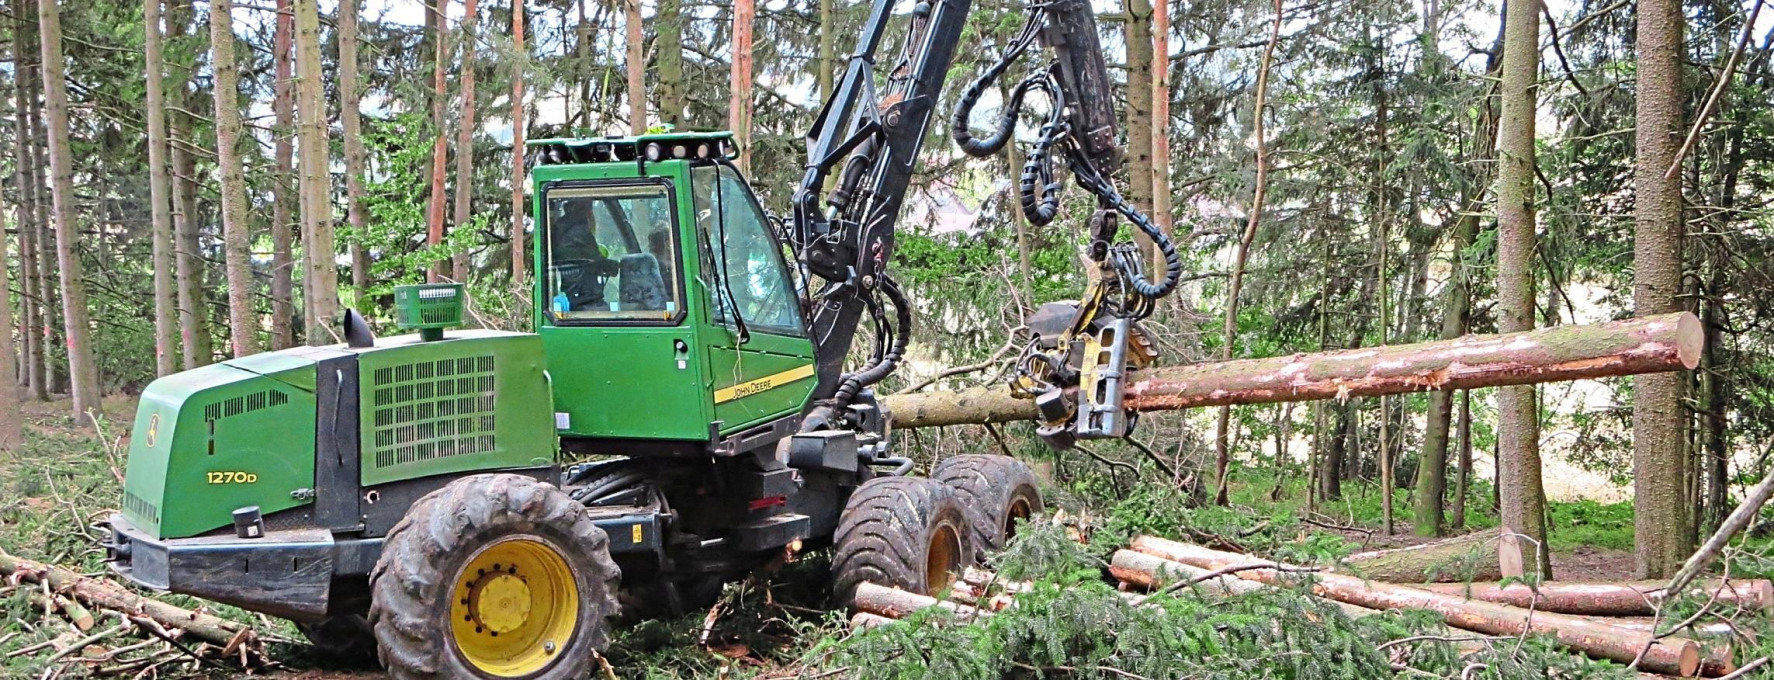 Am sichersten ist Waldarbeit mit Geräten wie einem Harvester, einer speziellen Maschine für die Holzernte. Foto: SVLFG